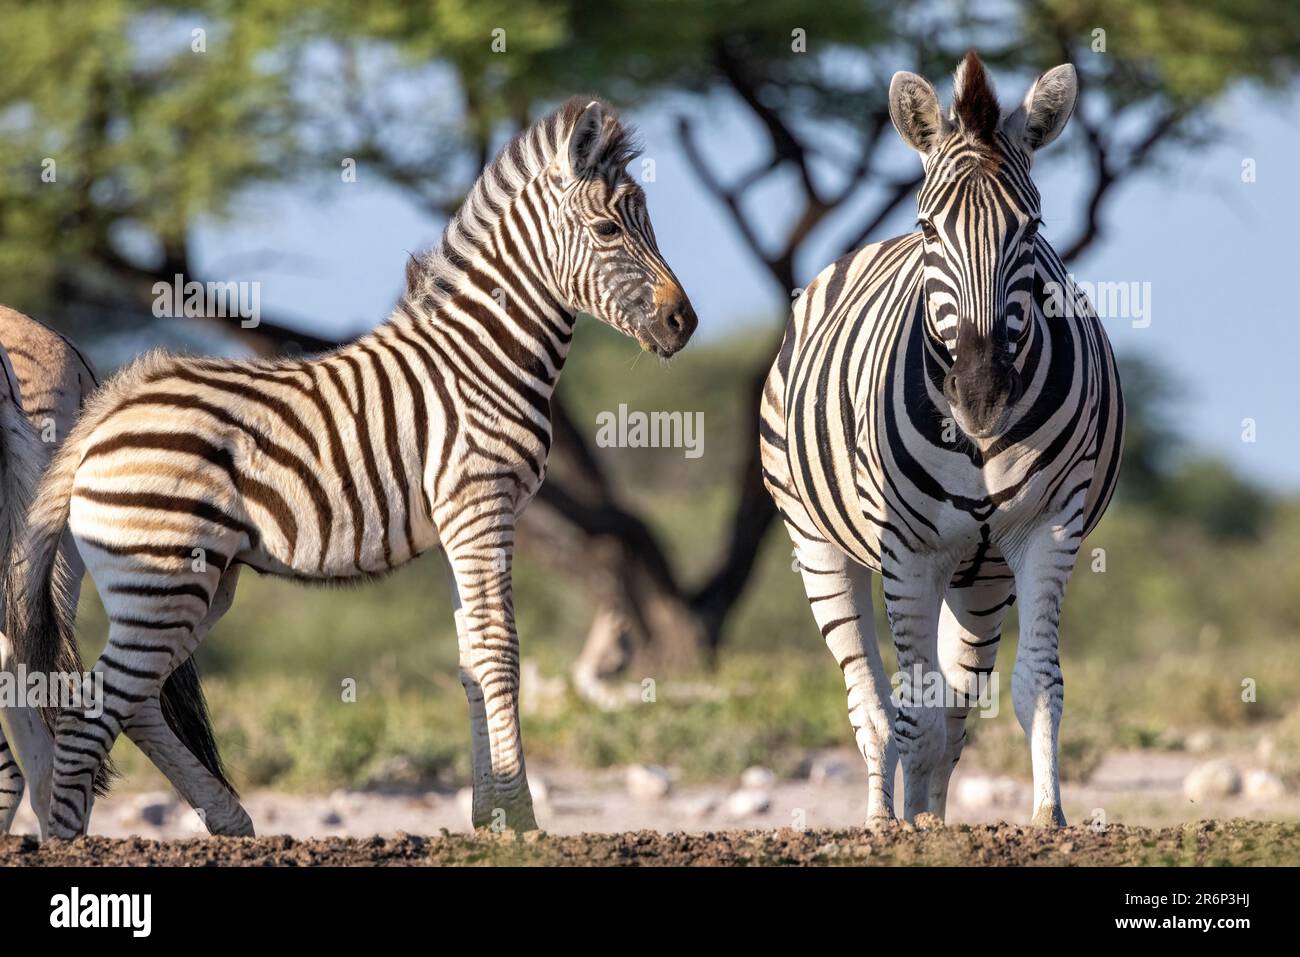 Zébra de plaines de mère et de foal (Equus quagga, anciennement Equus burchellii) - Onguma Game Reserve, Namibie, Afrique Banque D'Images